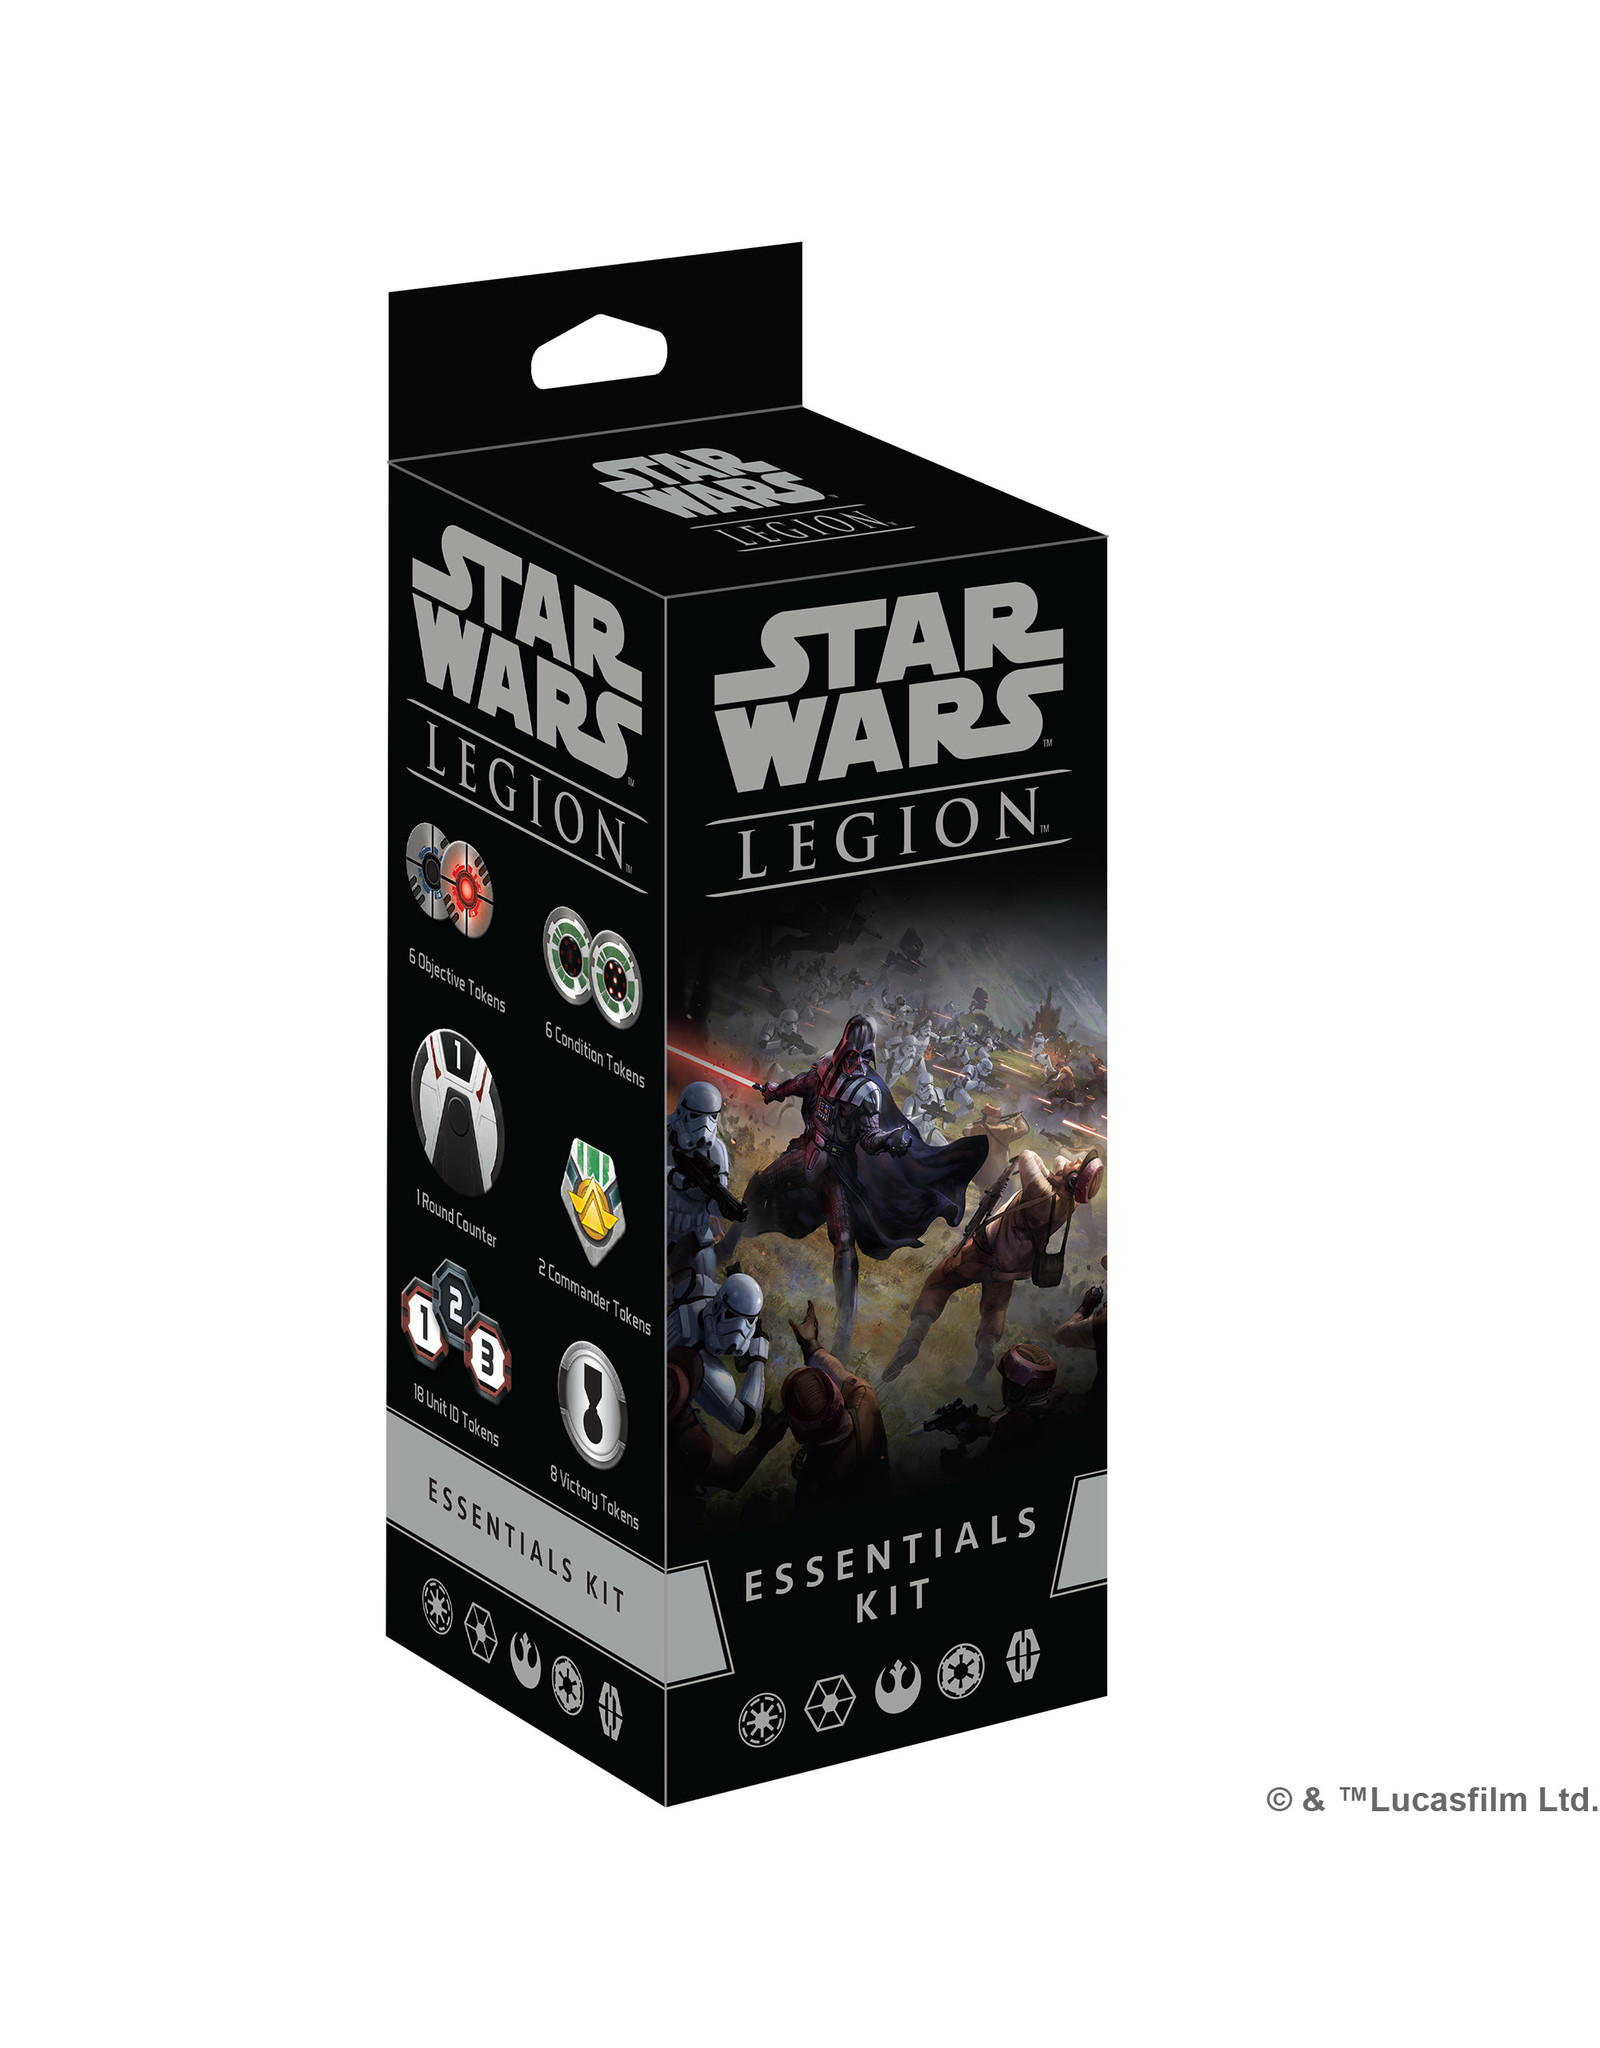 STAR WARS LEGION Star Wars Legion Essentials Kit